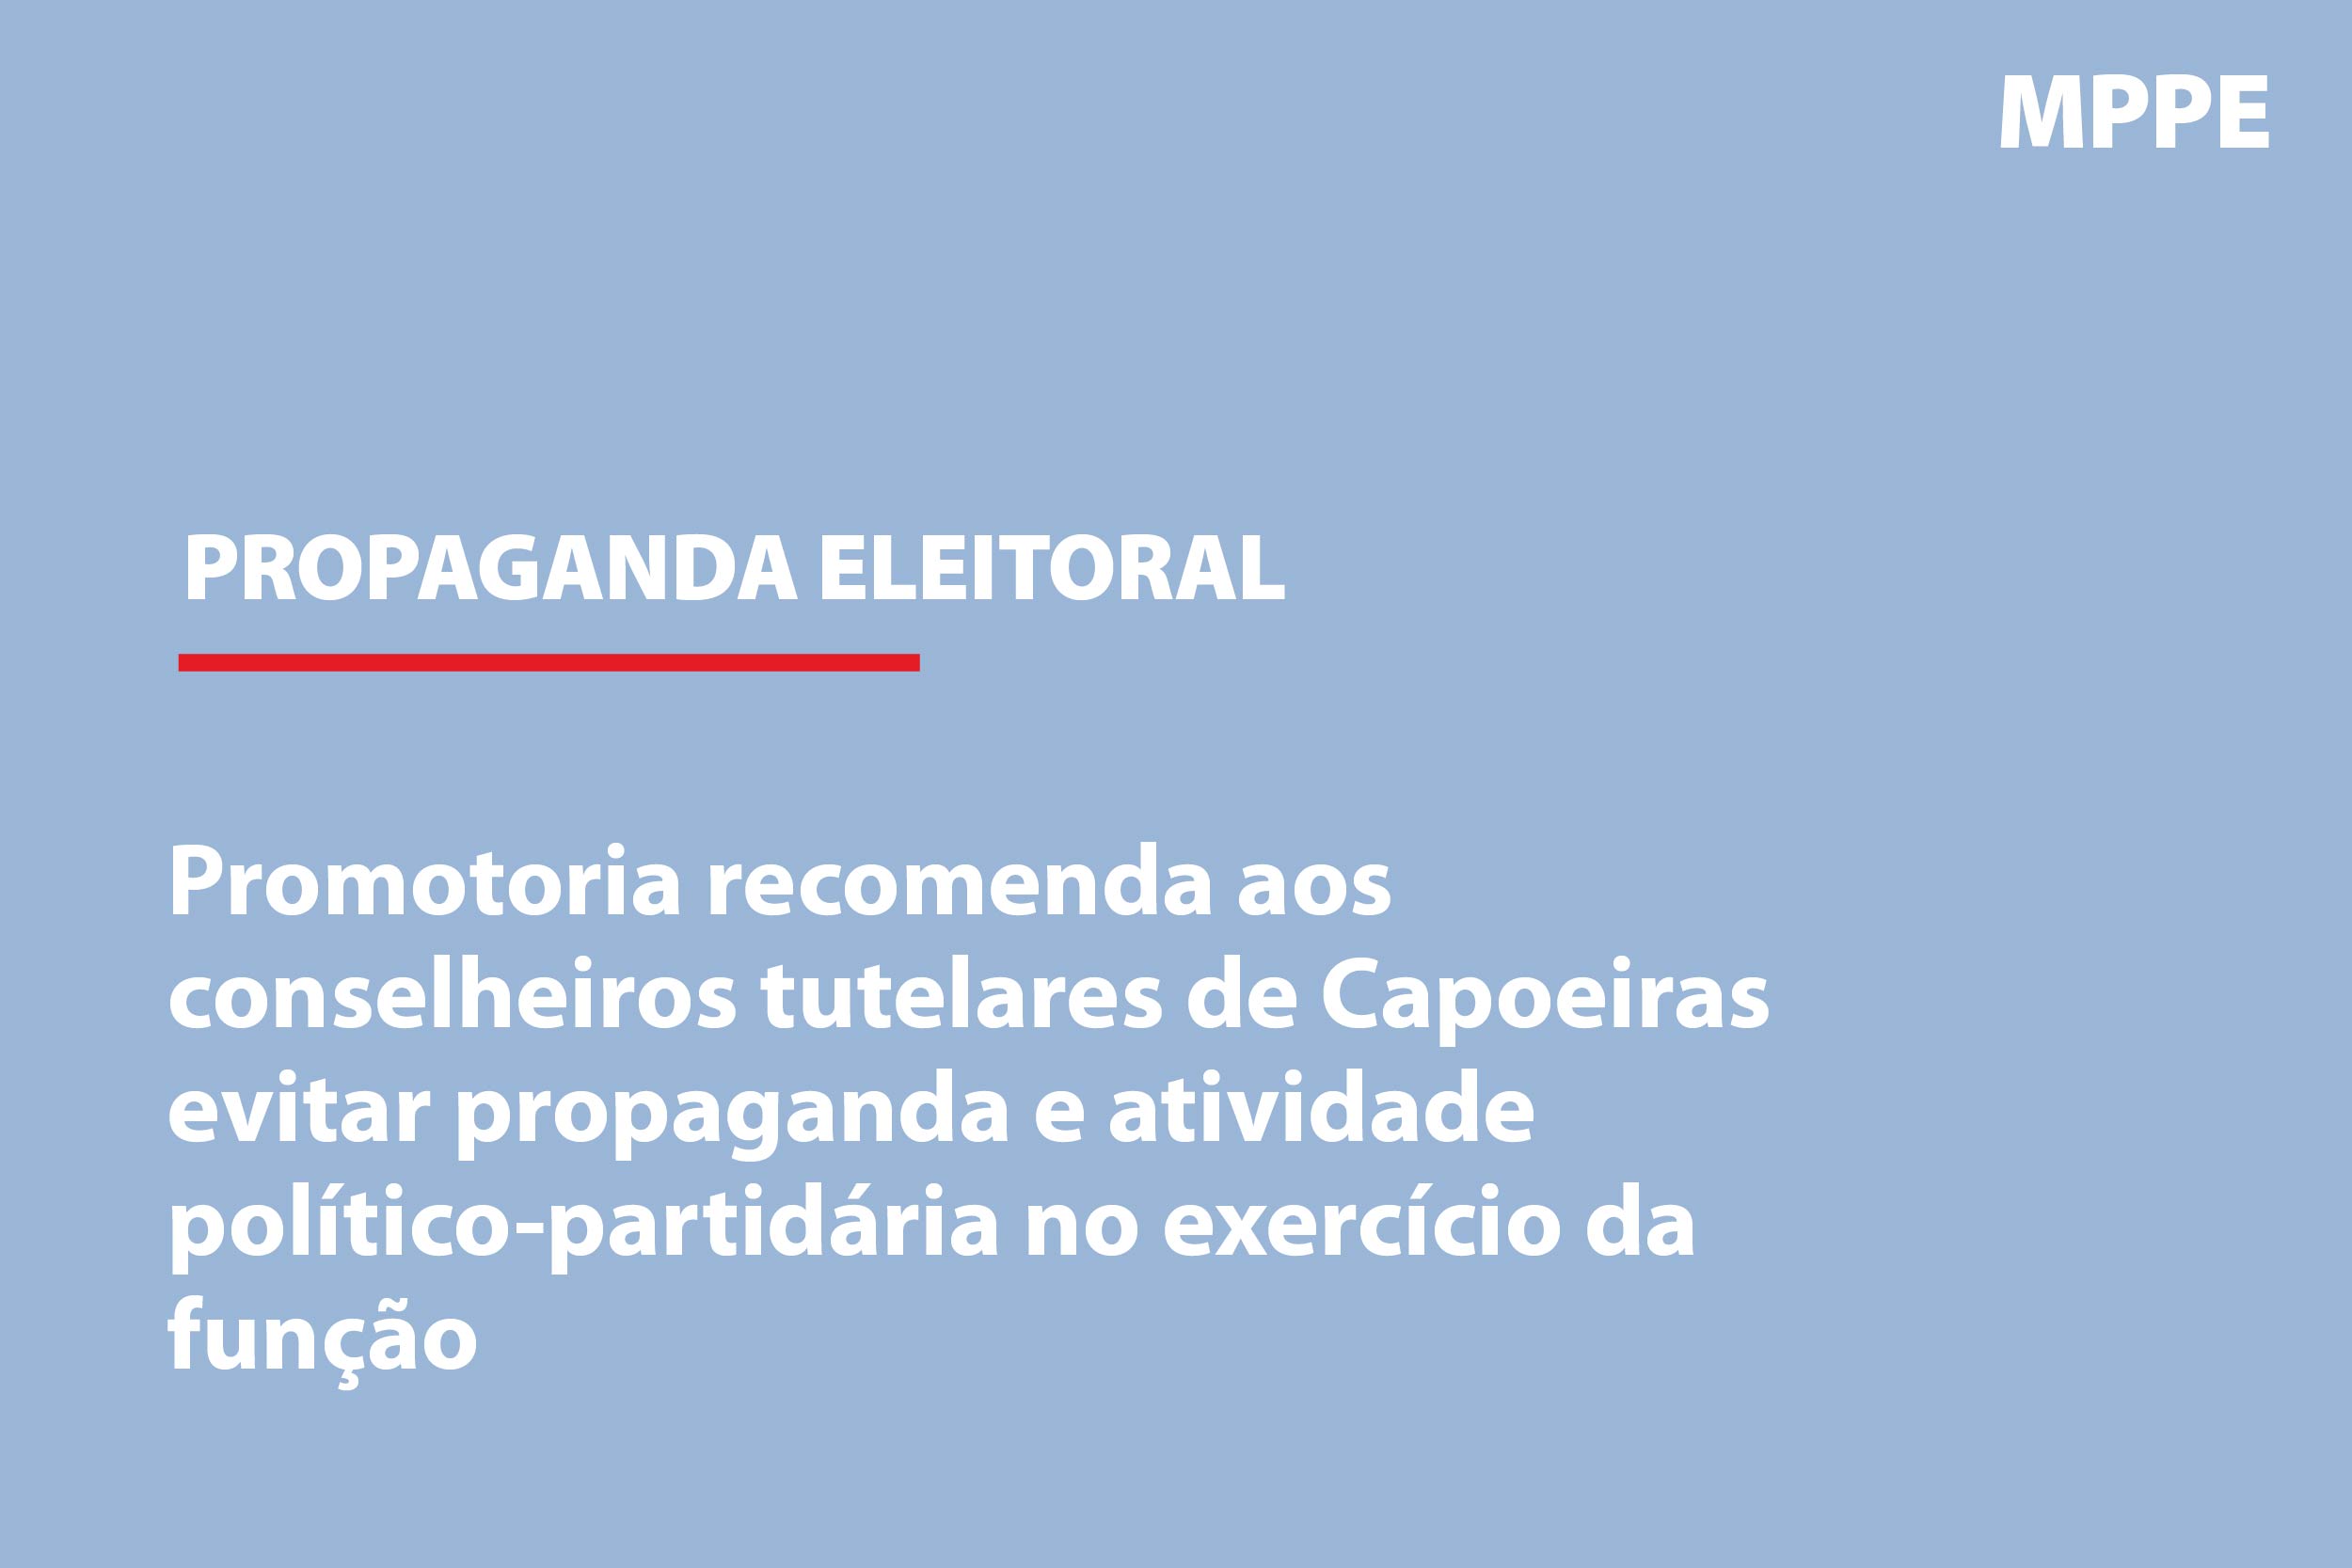 Capoeiras: Promotoria recomenda aos conselheiros evitar propaganda e atividade político-partidária no exercício da função